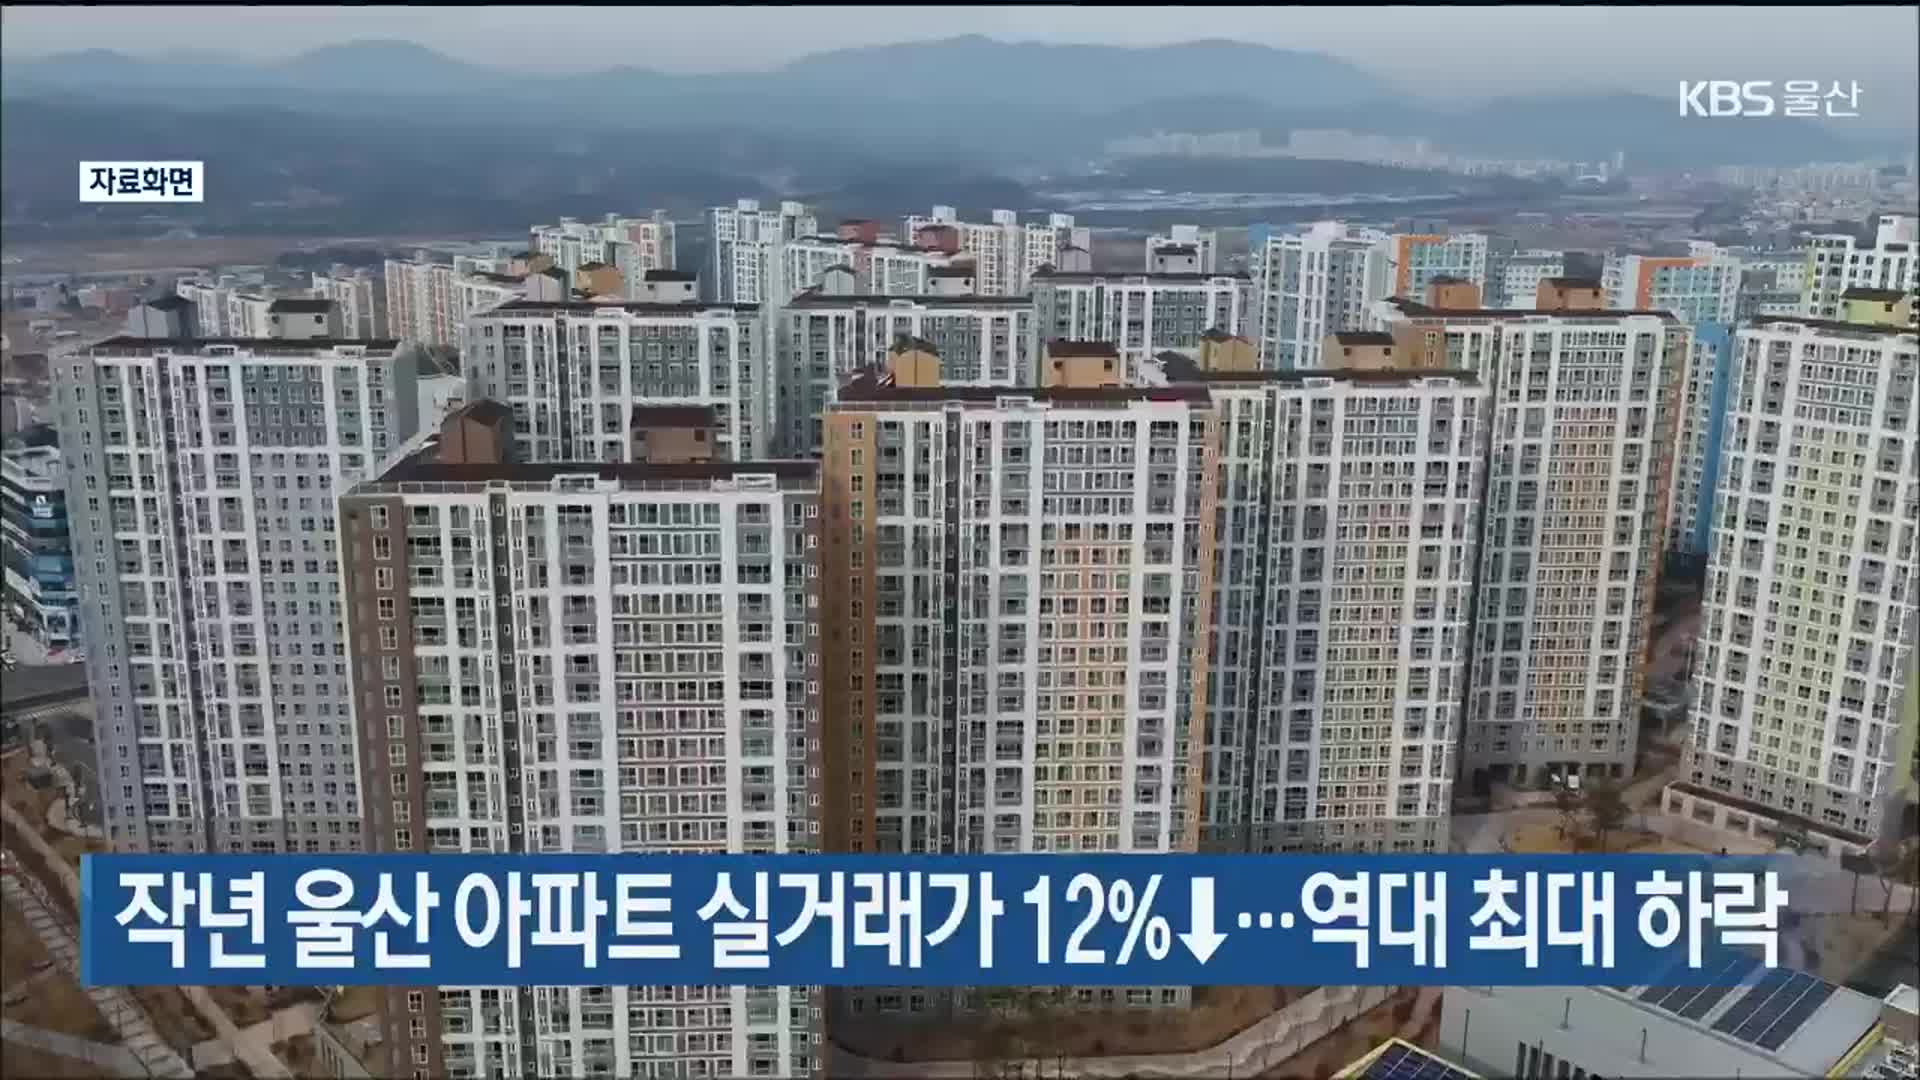 작년 울산 아파트 실거래가 12%↓…역대 최대 하락